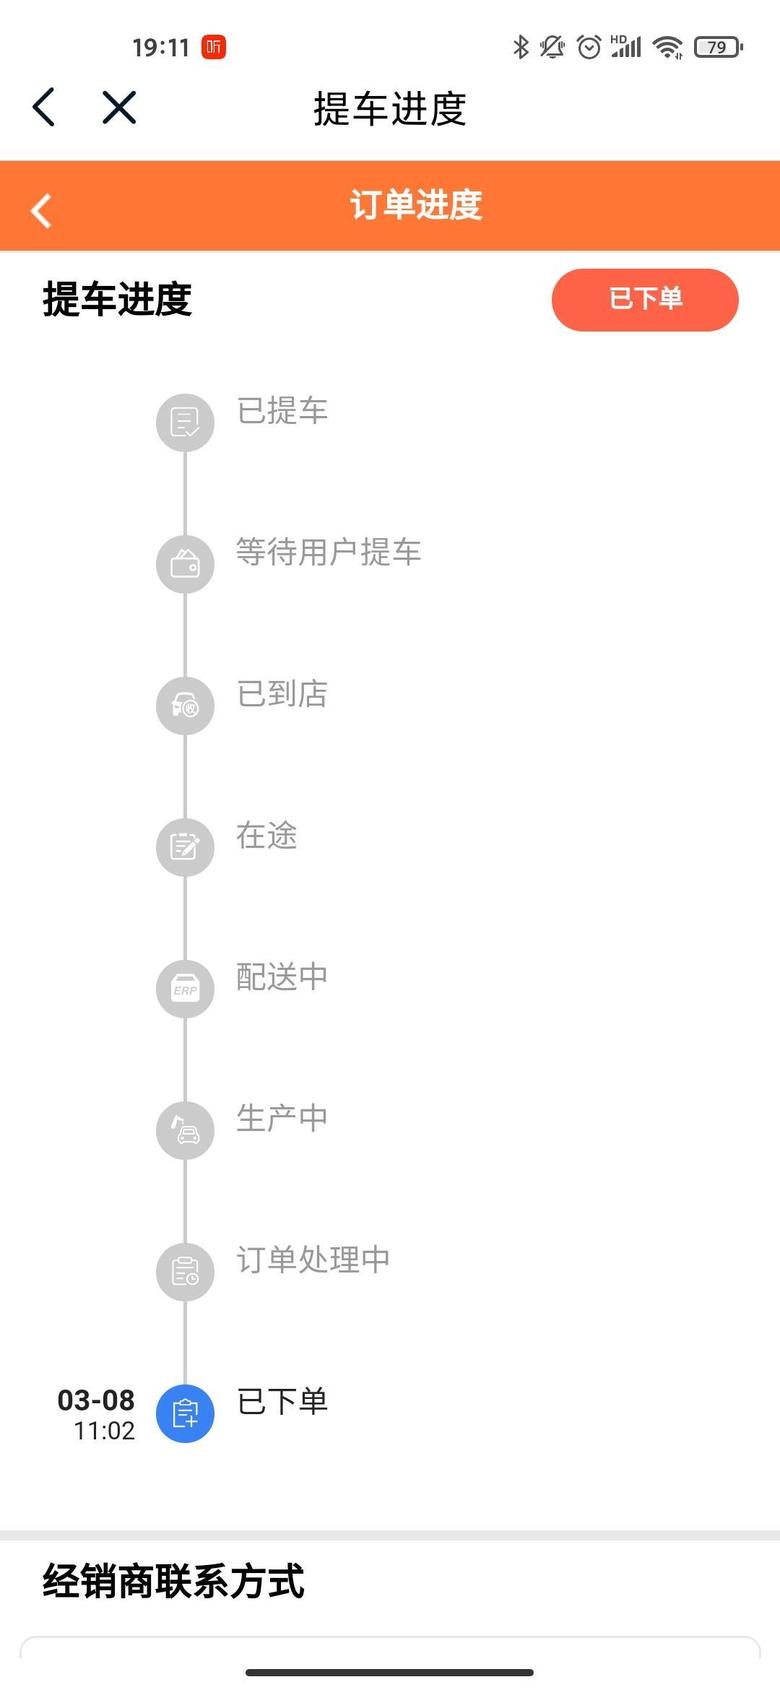 长安uni k-我上海的，为什么到今天为止在APP里还是灰色的，什么信息也没有？大家的都是什么样儿的？